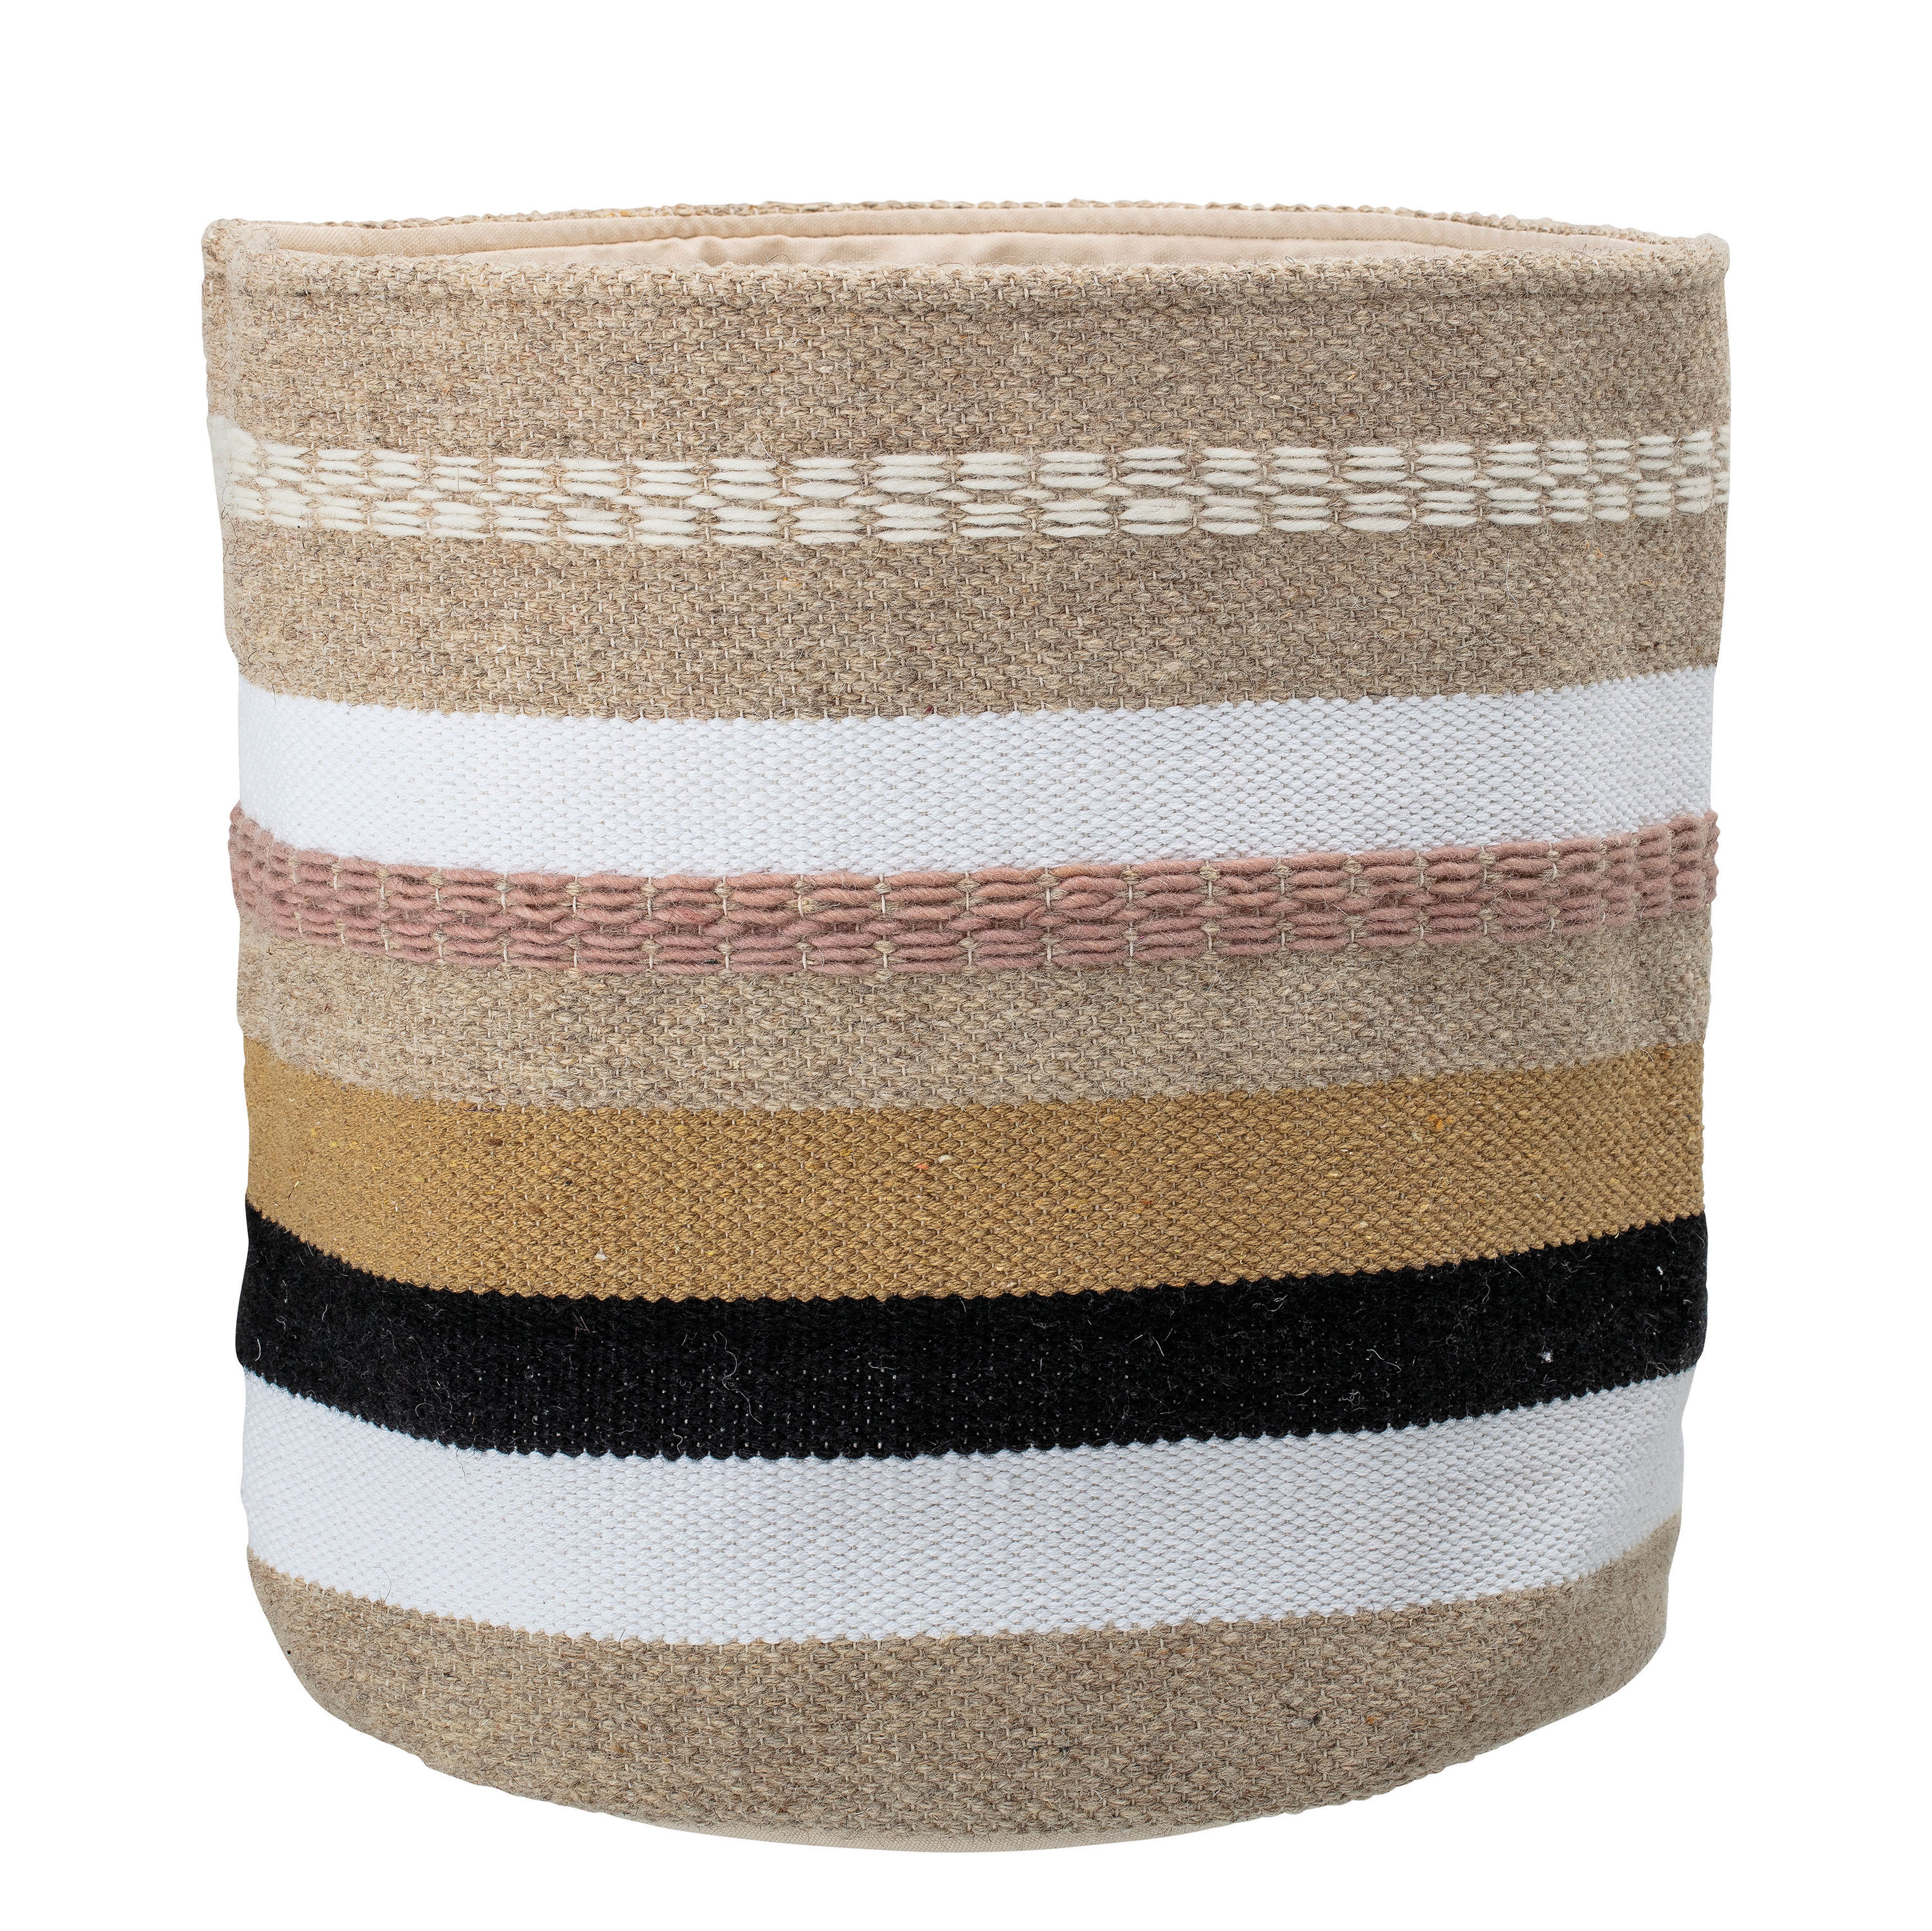 Fabric Basket w Stripes - Moss & Wilder